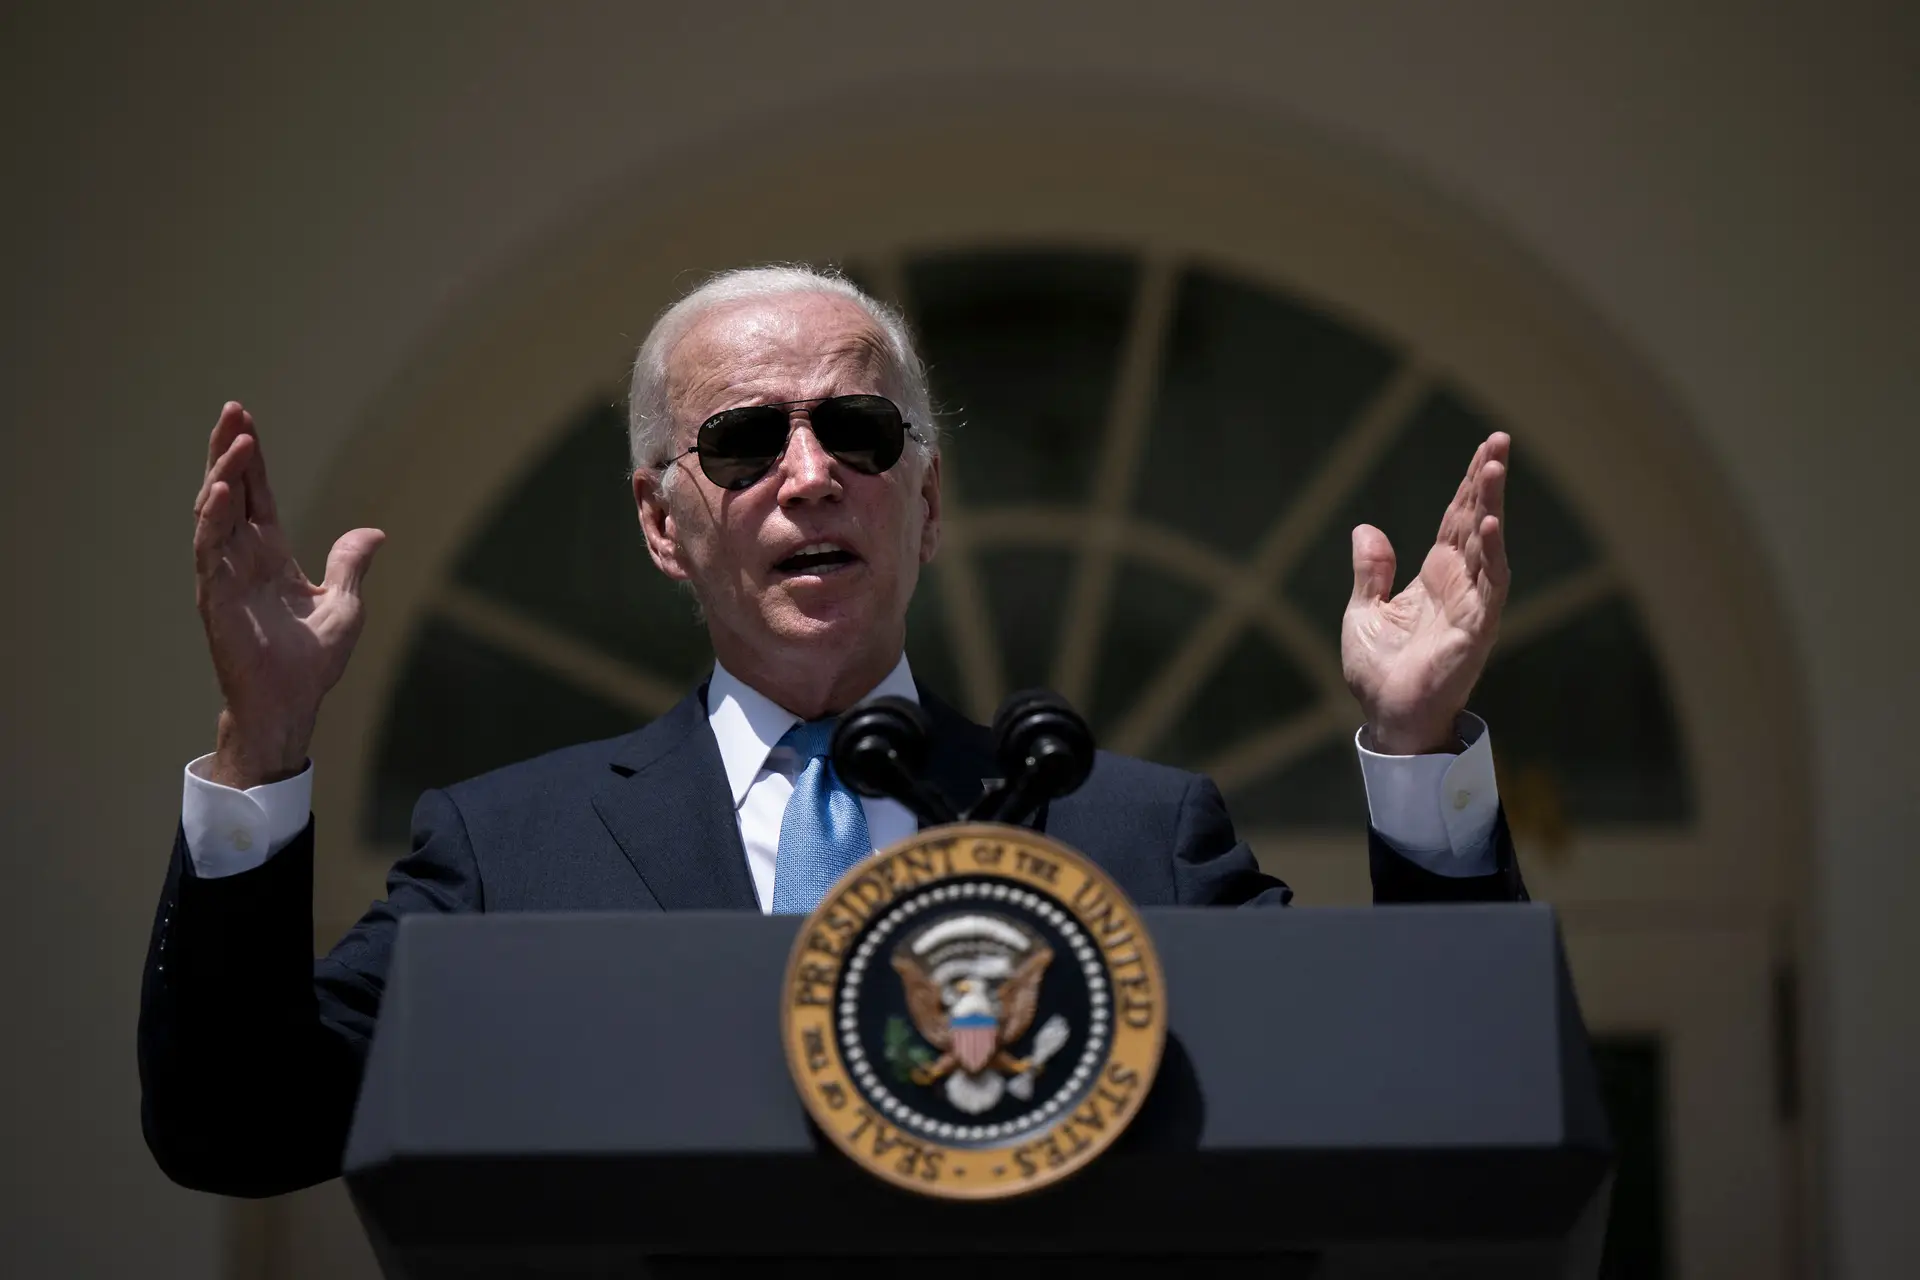 Biden destaca vitórias democratas e critica "semi-fascismo" republicano em comício